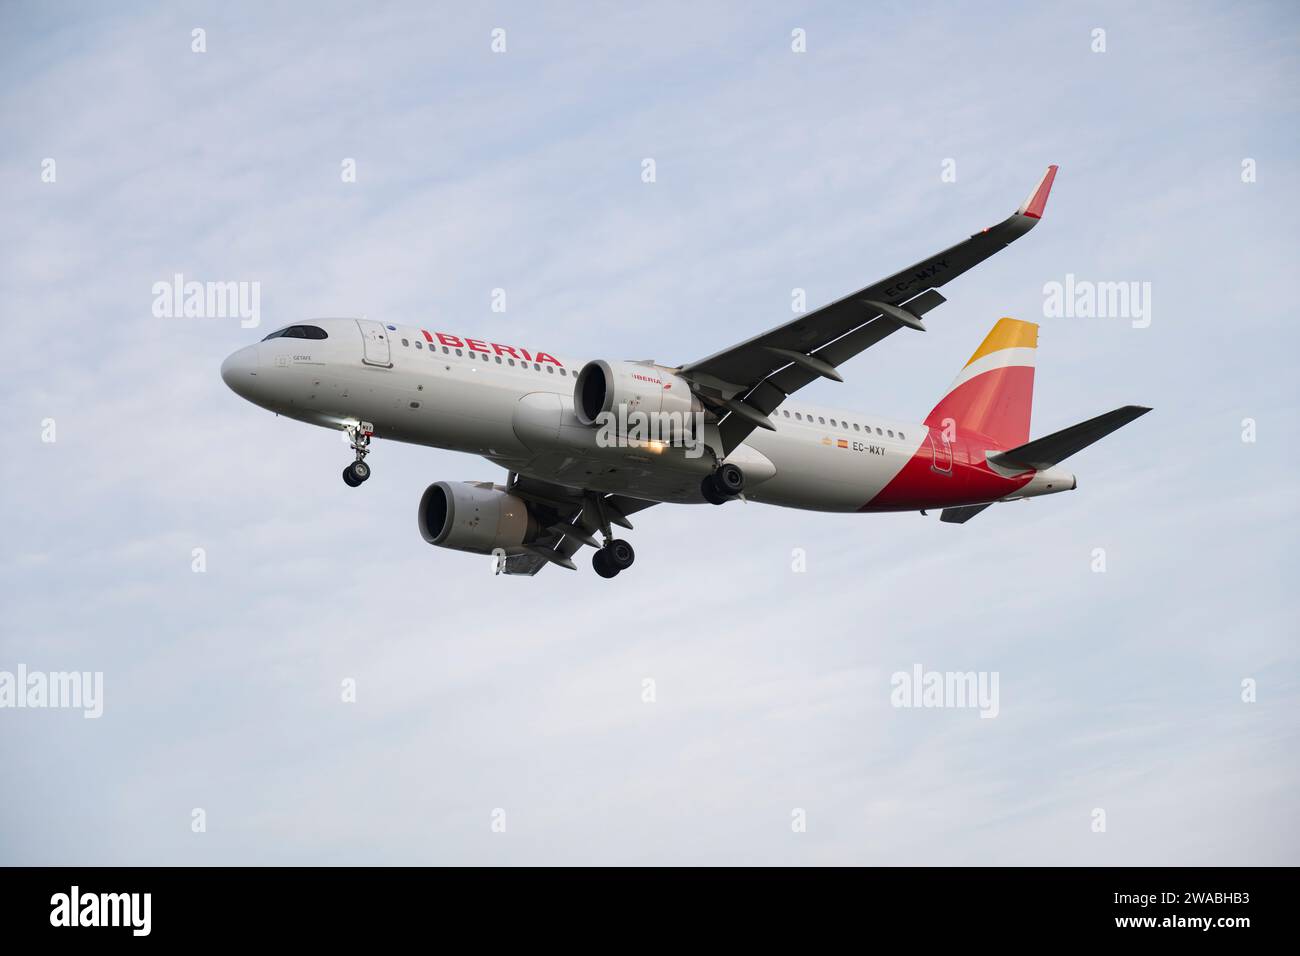 Espagnol Iberia Airbus A320neo Passenger Jet enregistrement EC-MXY en courte finale pour un atterrissage sur la piste 27L à l'aéroport de Londres Heathrow Banque D'Images